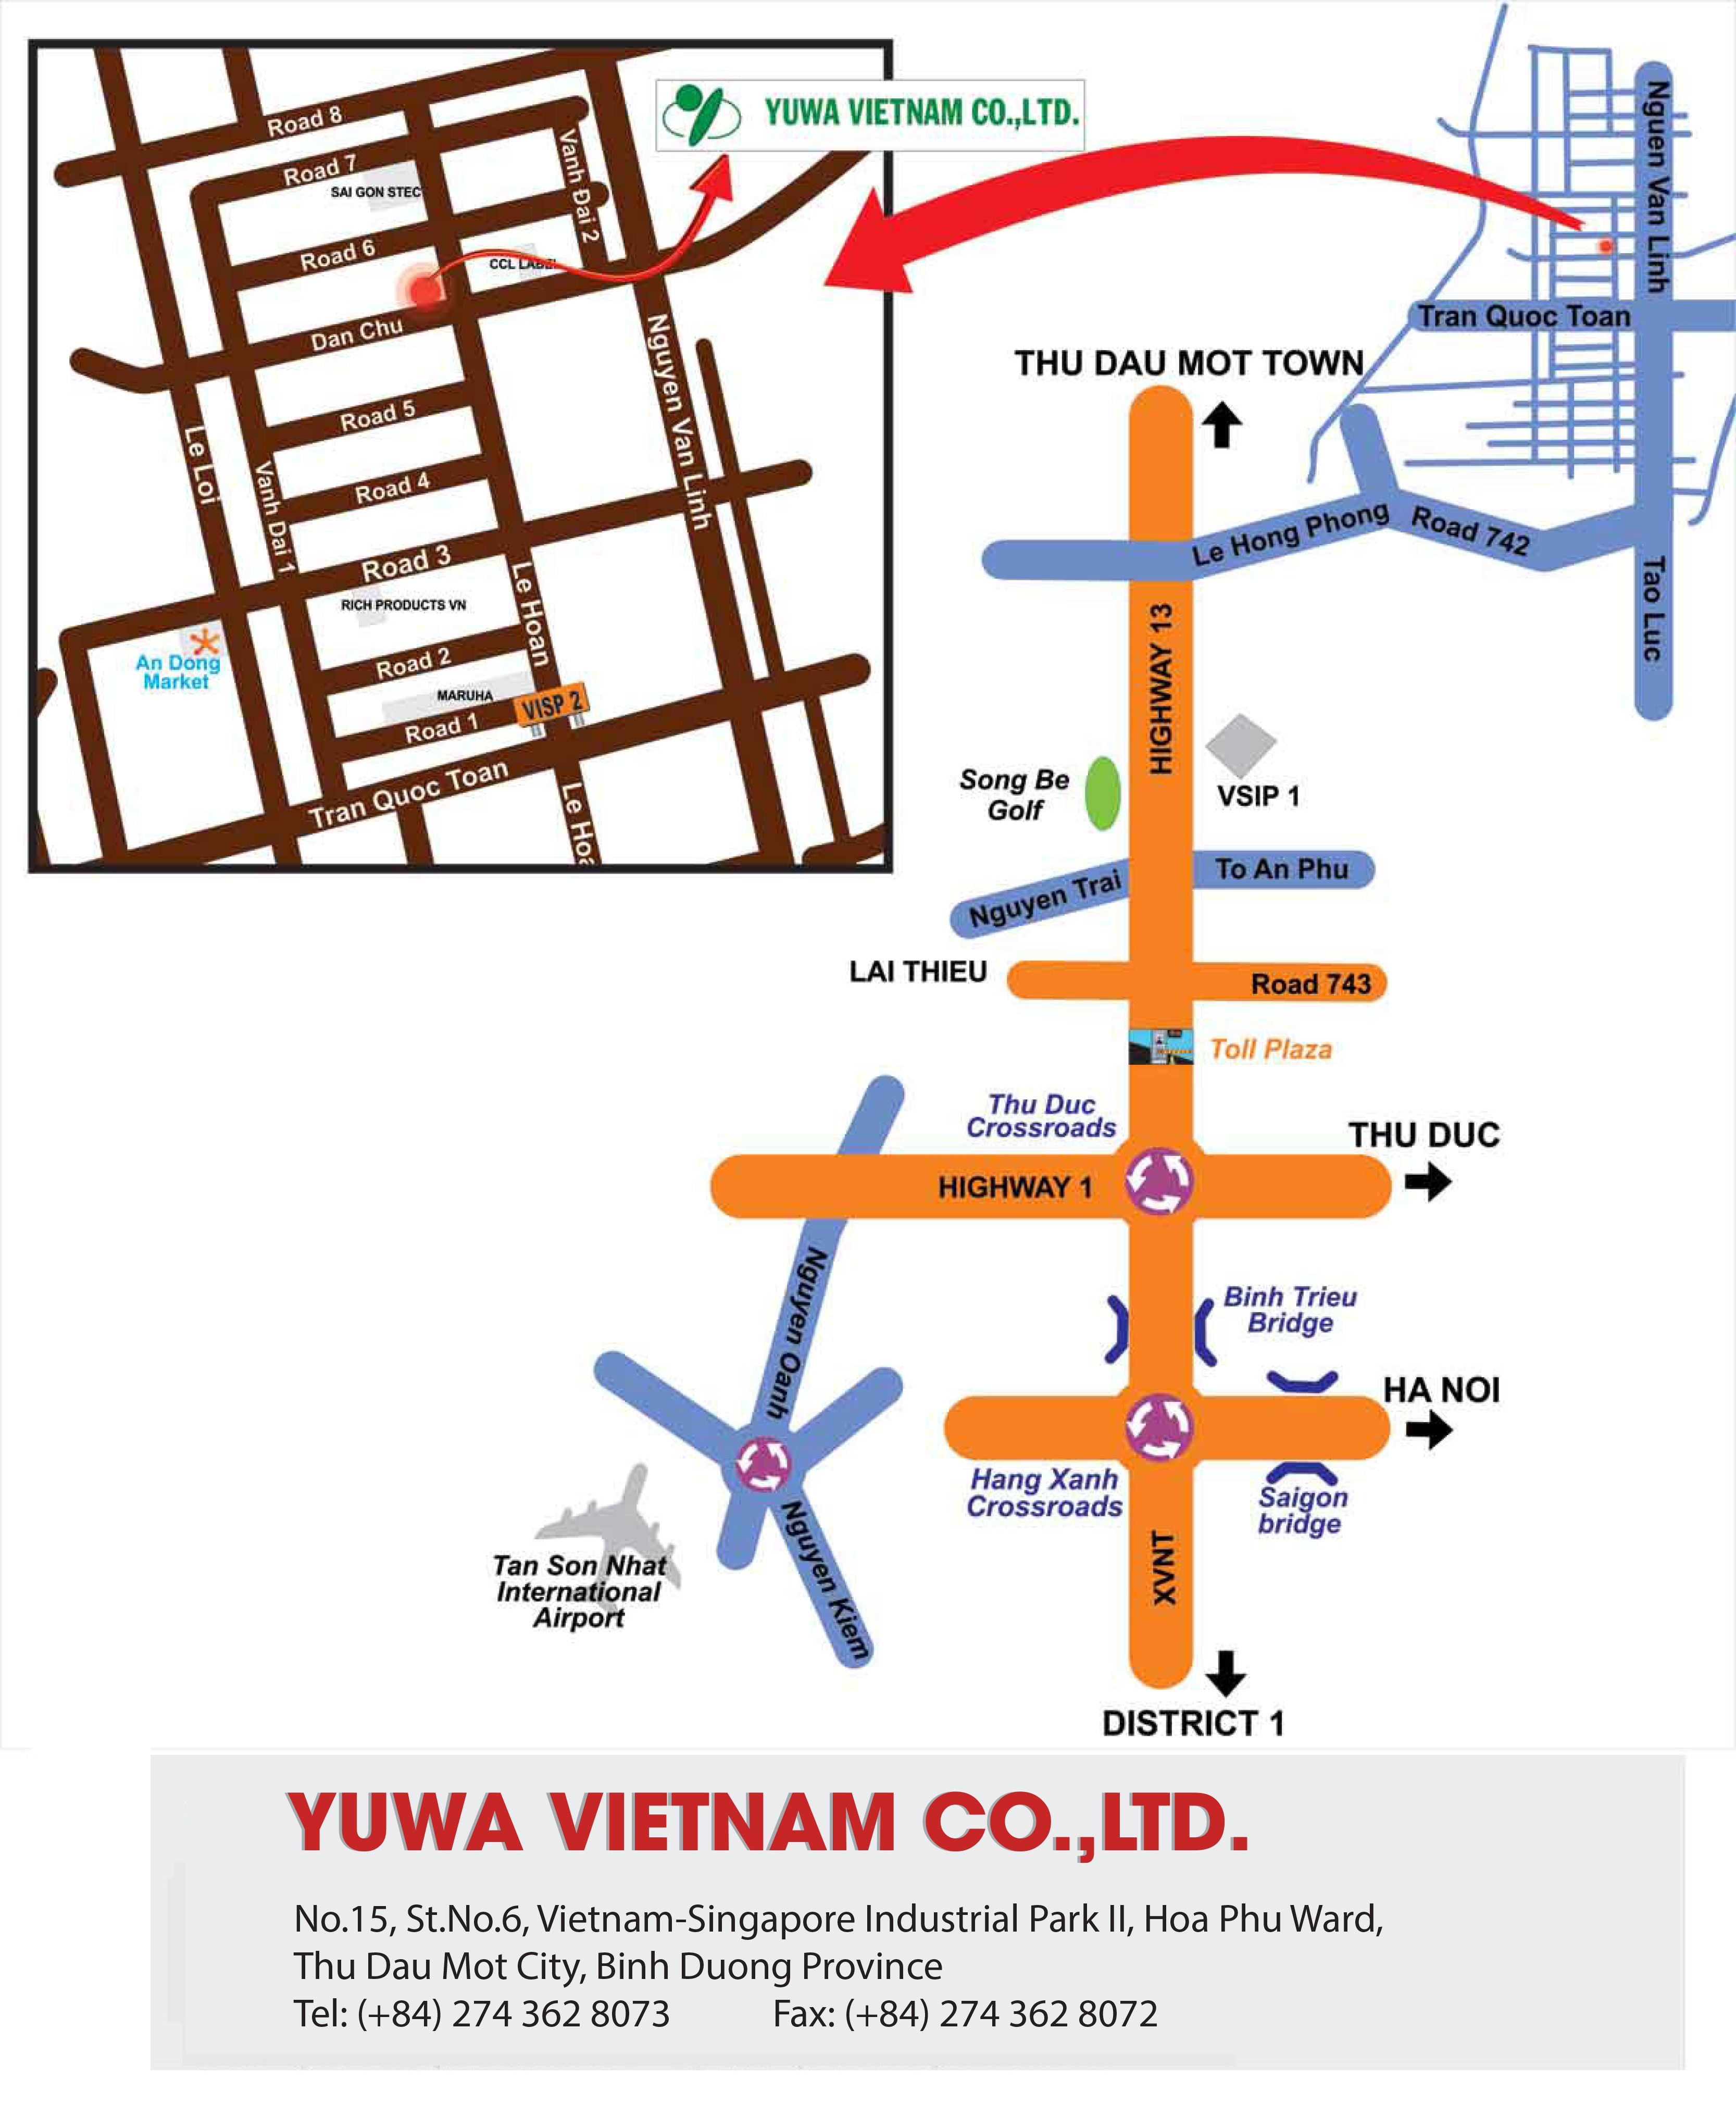 ユウワベトナム YUWA VIETNAM CO.,LTD | Fact-Link Viet Nam